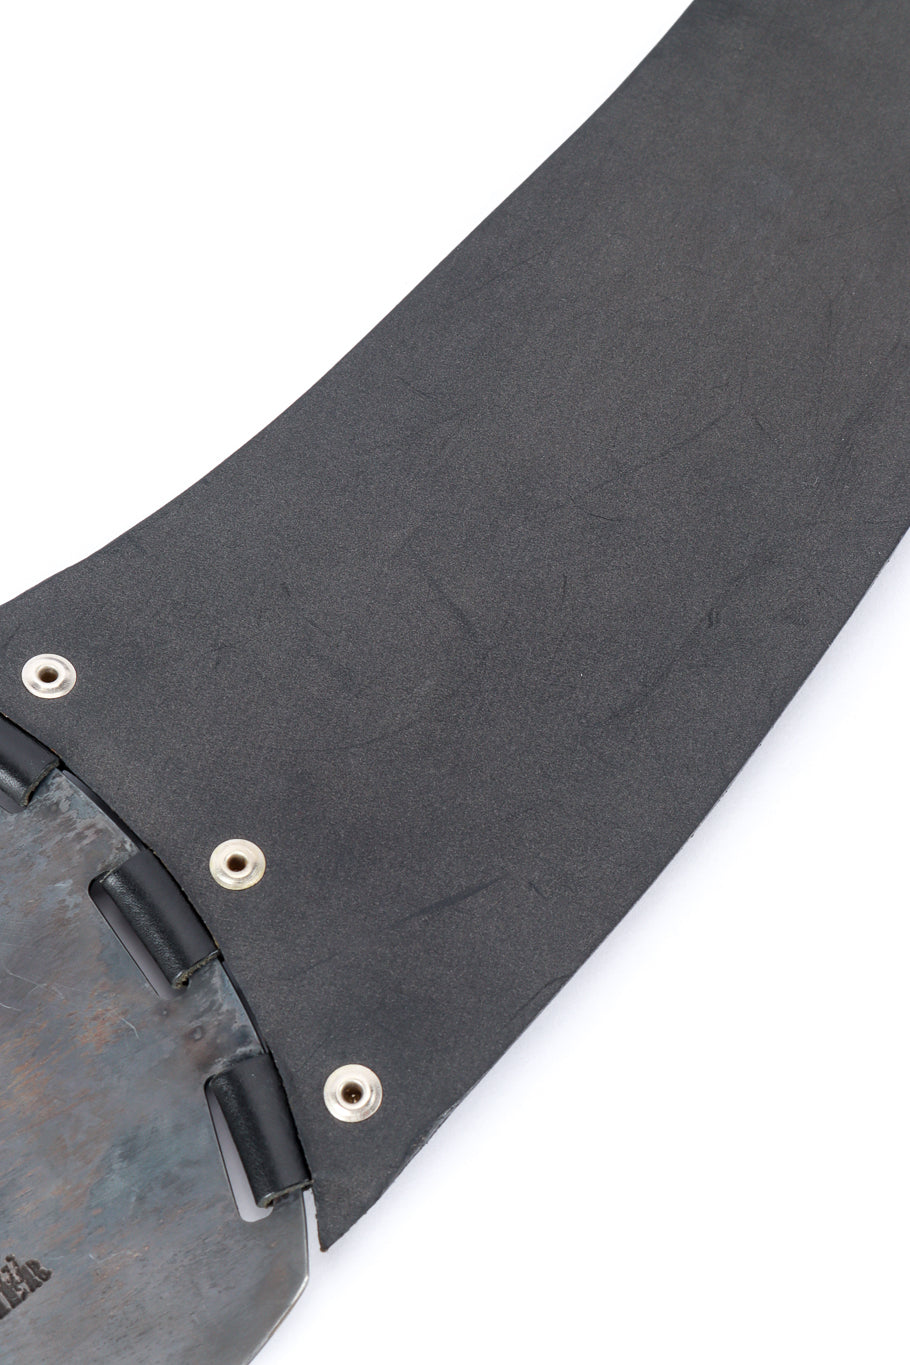 Jean Paul Gaultier fringe belt wear detail @RECESS LA